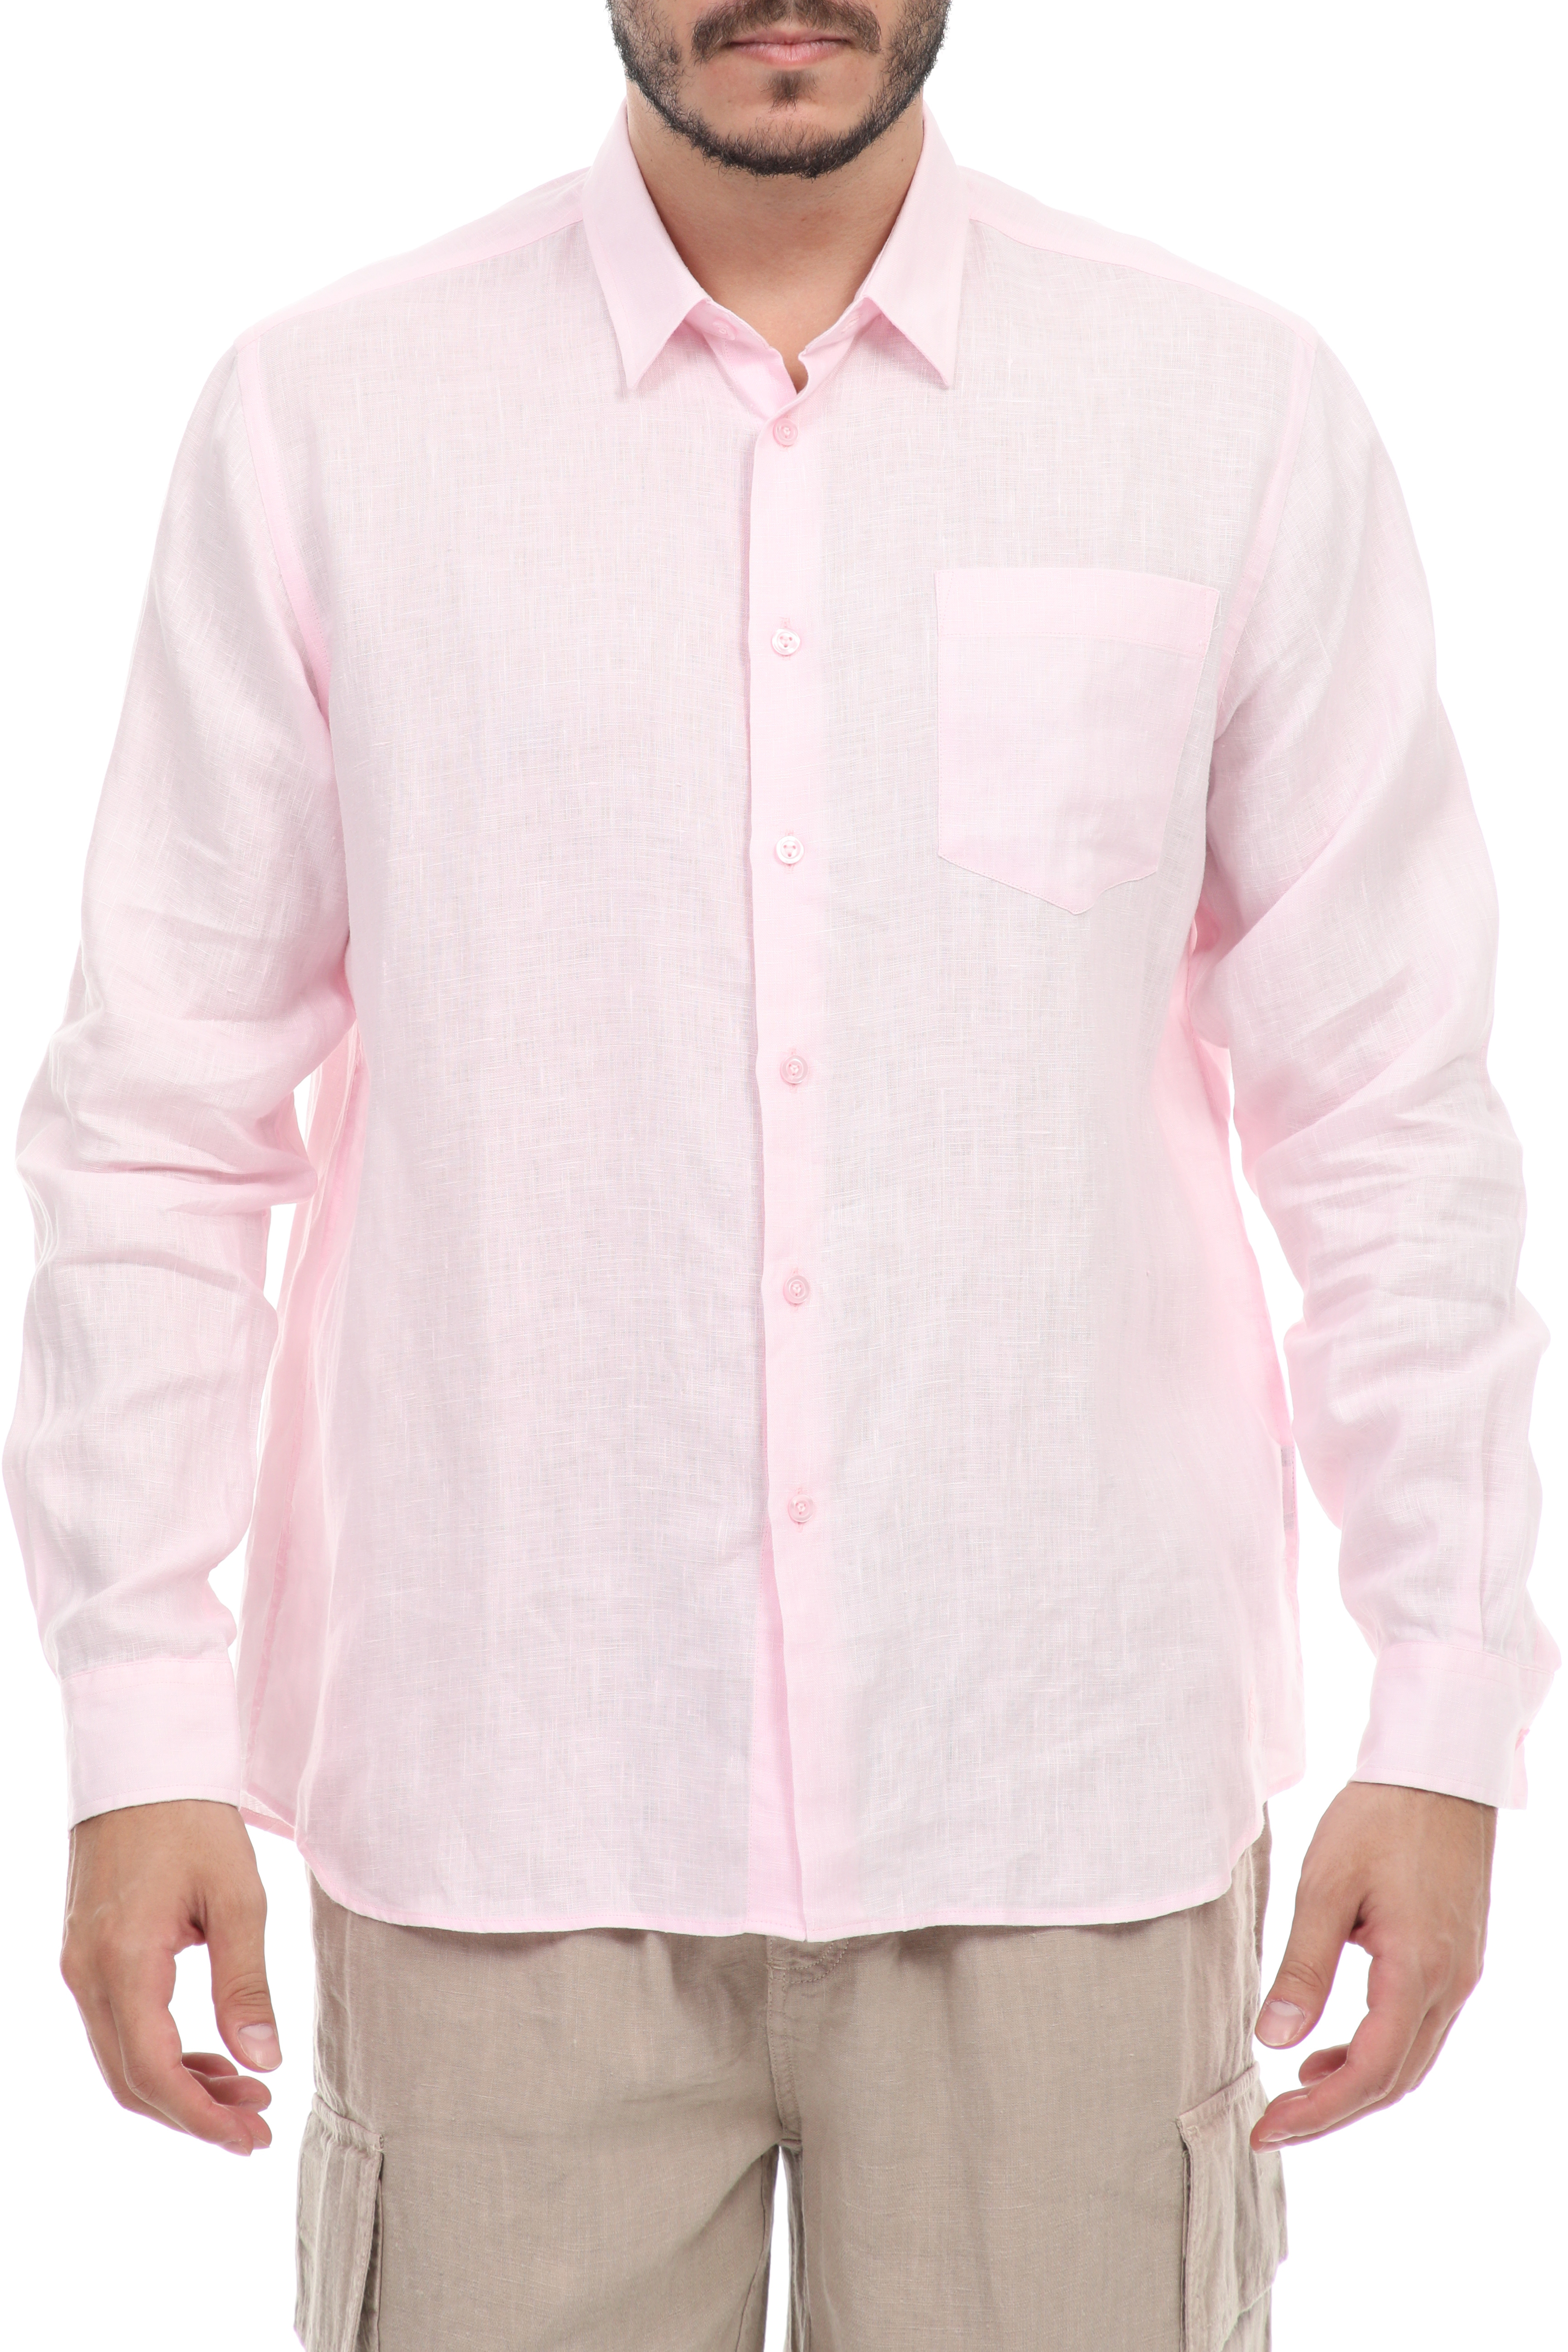 Ανδρικά/Ρούχα/Πουκάμισα/Μακρυμάνικα VILEBREQUIN - Ανδρικό λινό πουκάμισο VILEBREQUIN CAROUBIS ροζ